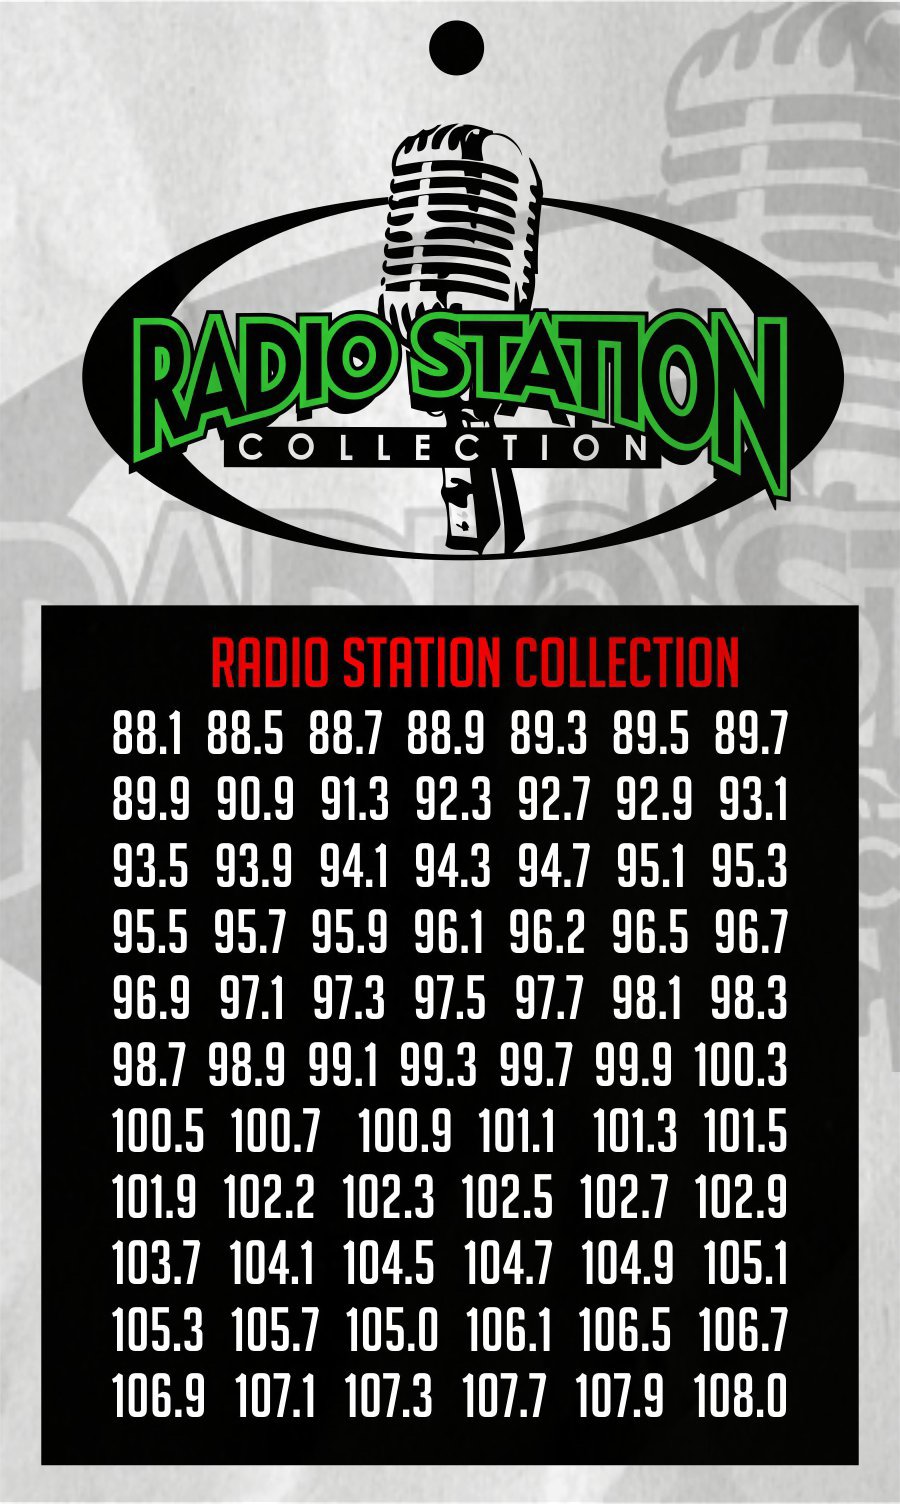  RADIO STATION COLLECTION RADIO STATION COLLECTION 88.1 88.5 88.7 88.9 89.5 89.7 89.9 90.9 91.3 92.3 92.7 92.9 93.1 93.5 93.9 94.